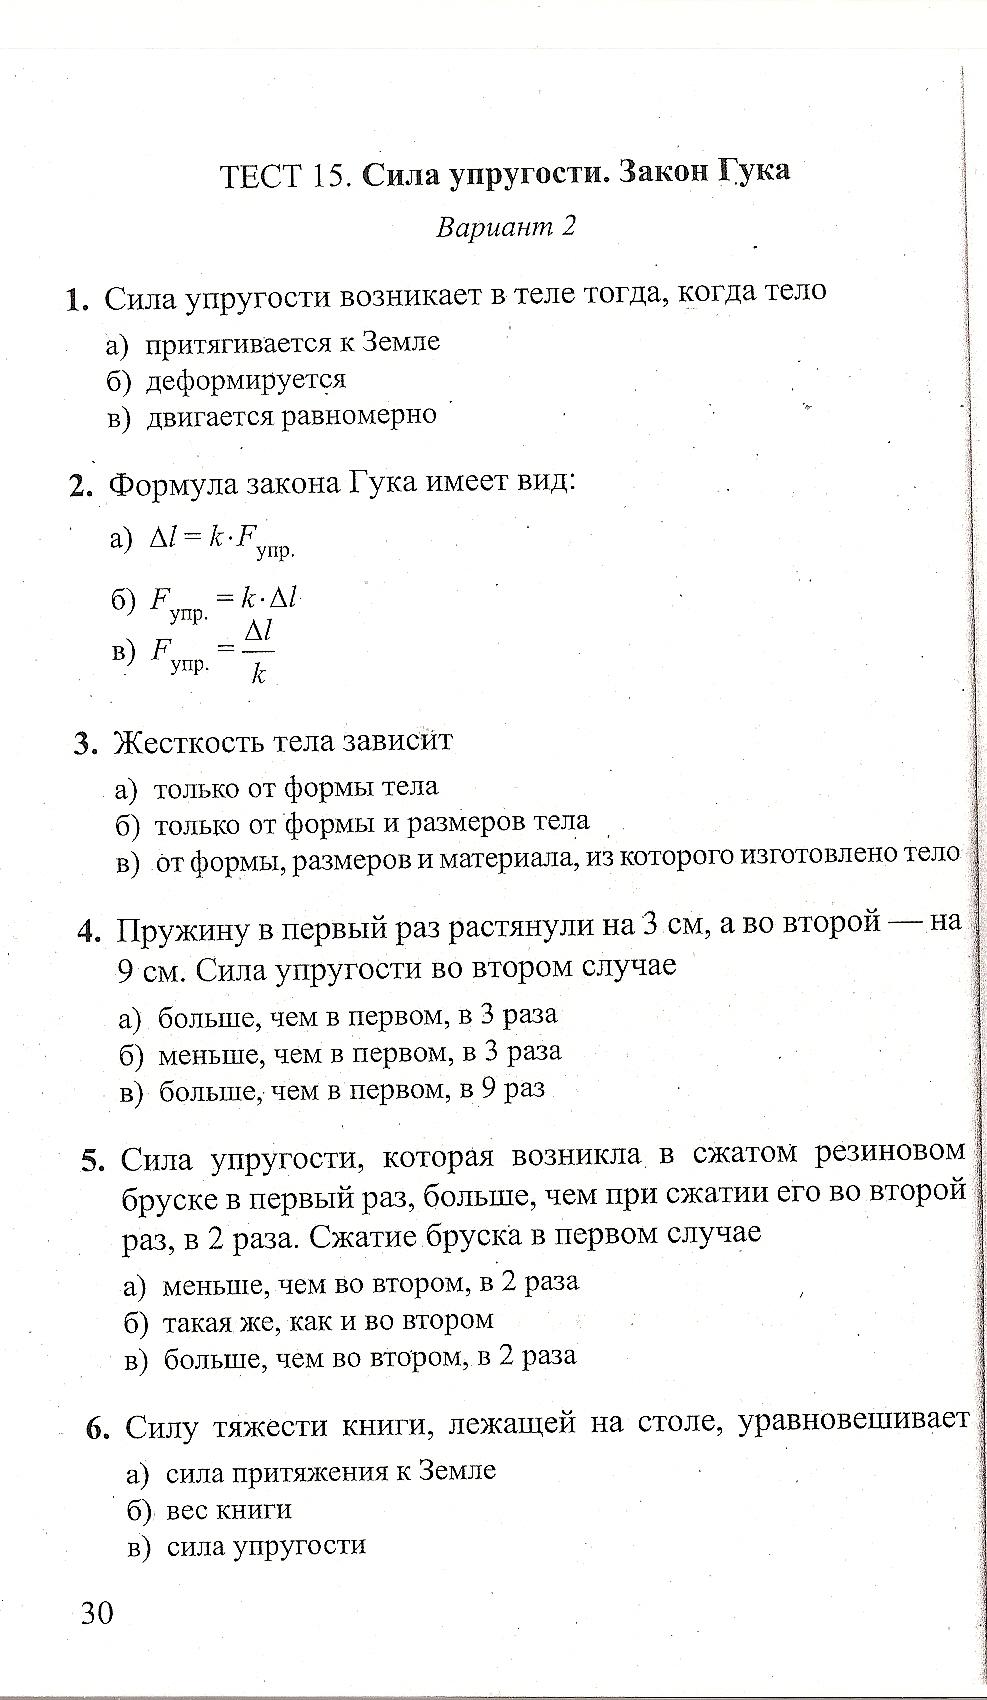 Тест по физике номер 7